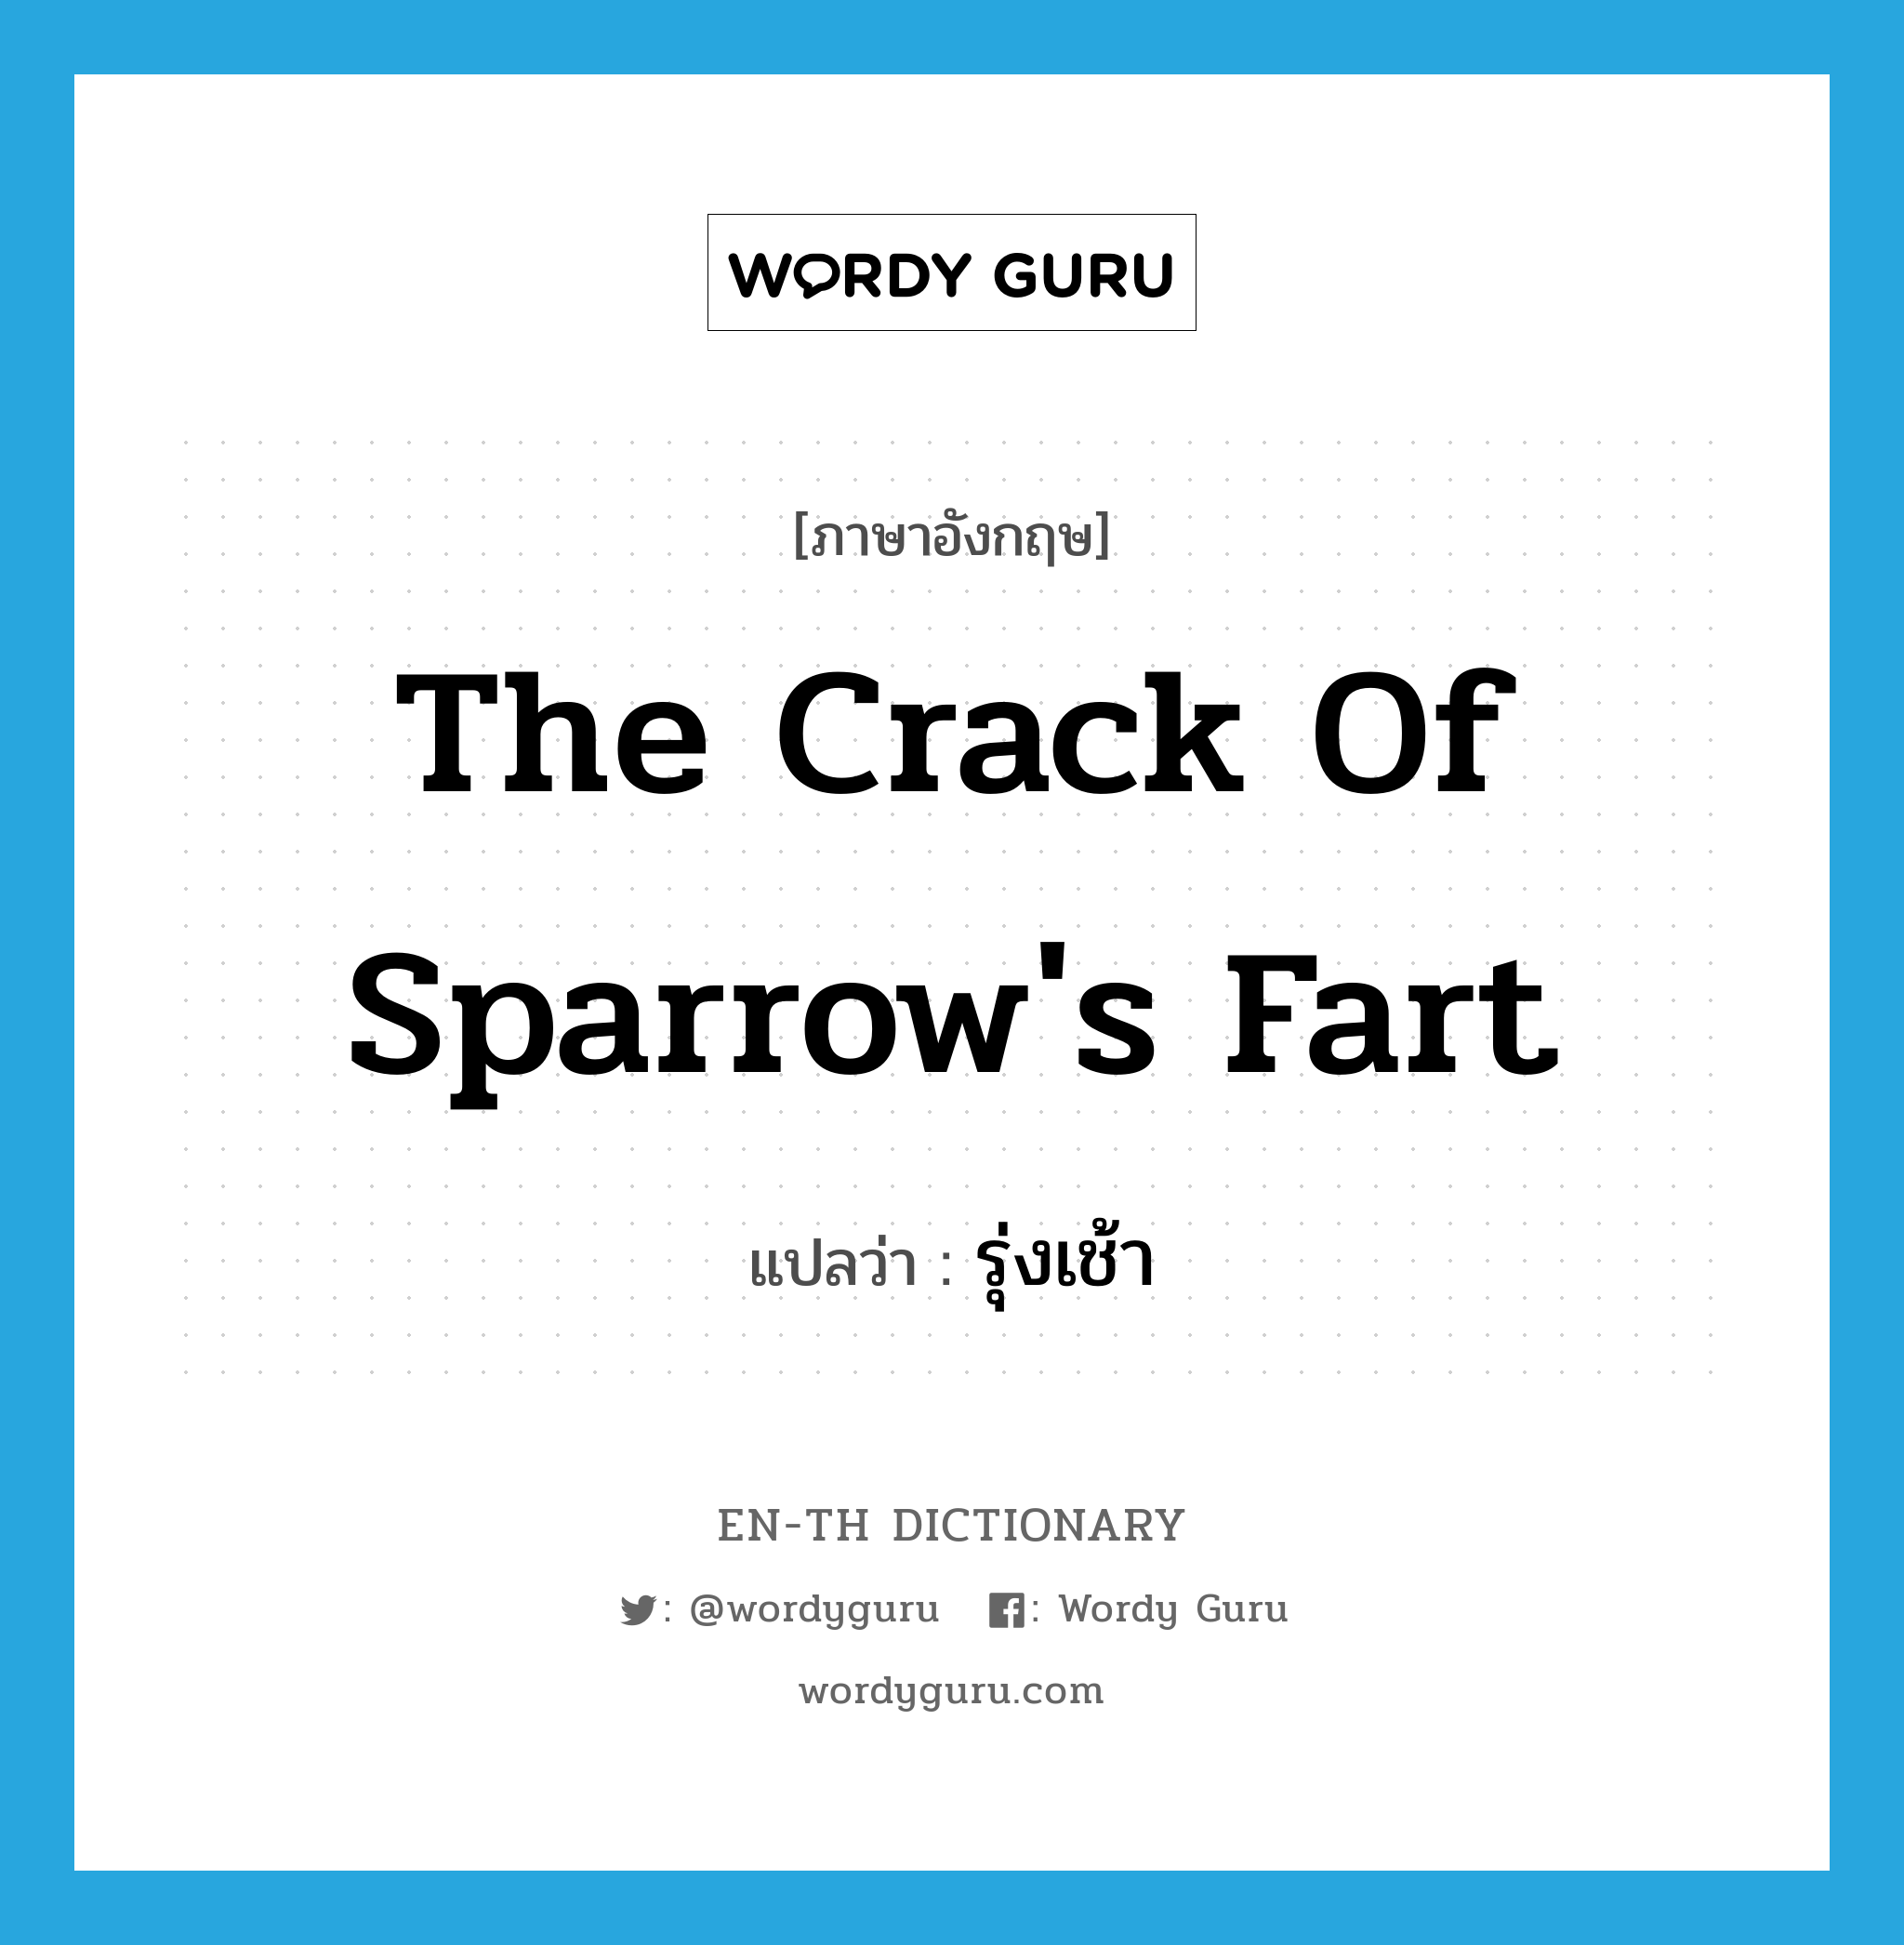 รุ่งเช้า ภาษาอังกฤษ?, คำศัพท์ภาษาอังกฤษ รุ่งเช้า แปลว่า the crack of sparrow's fart ประเภท SL หมวด SL